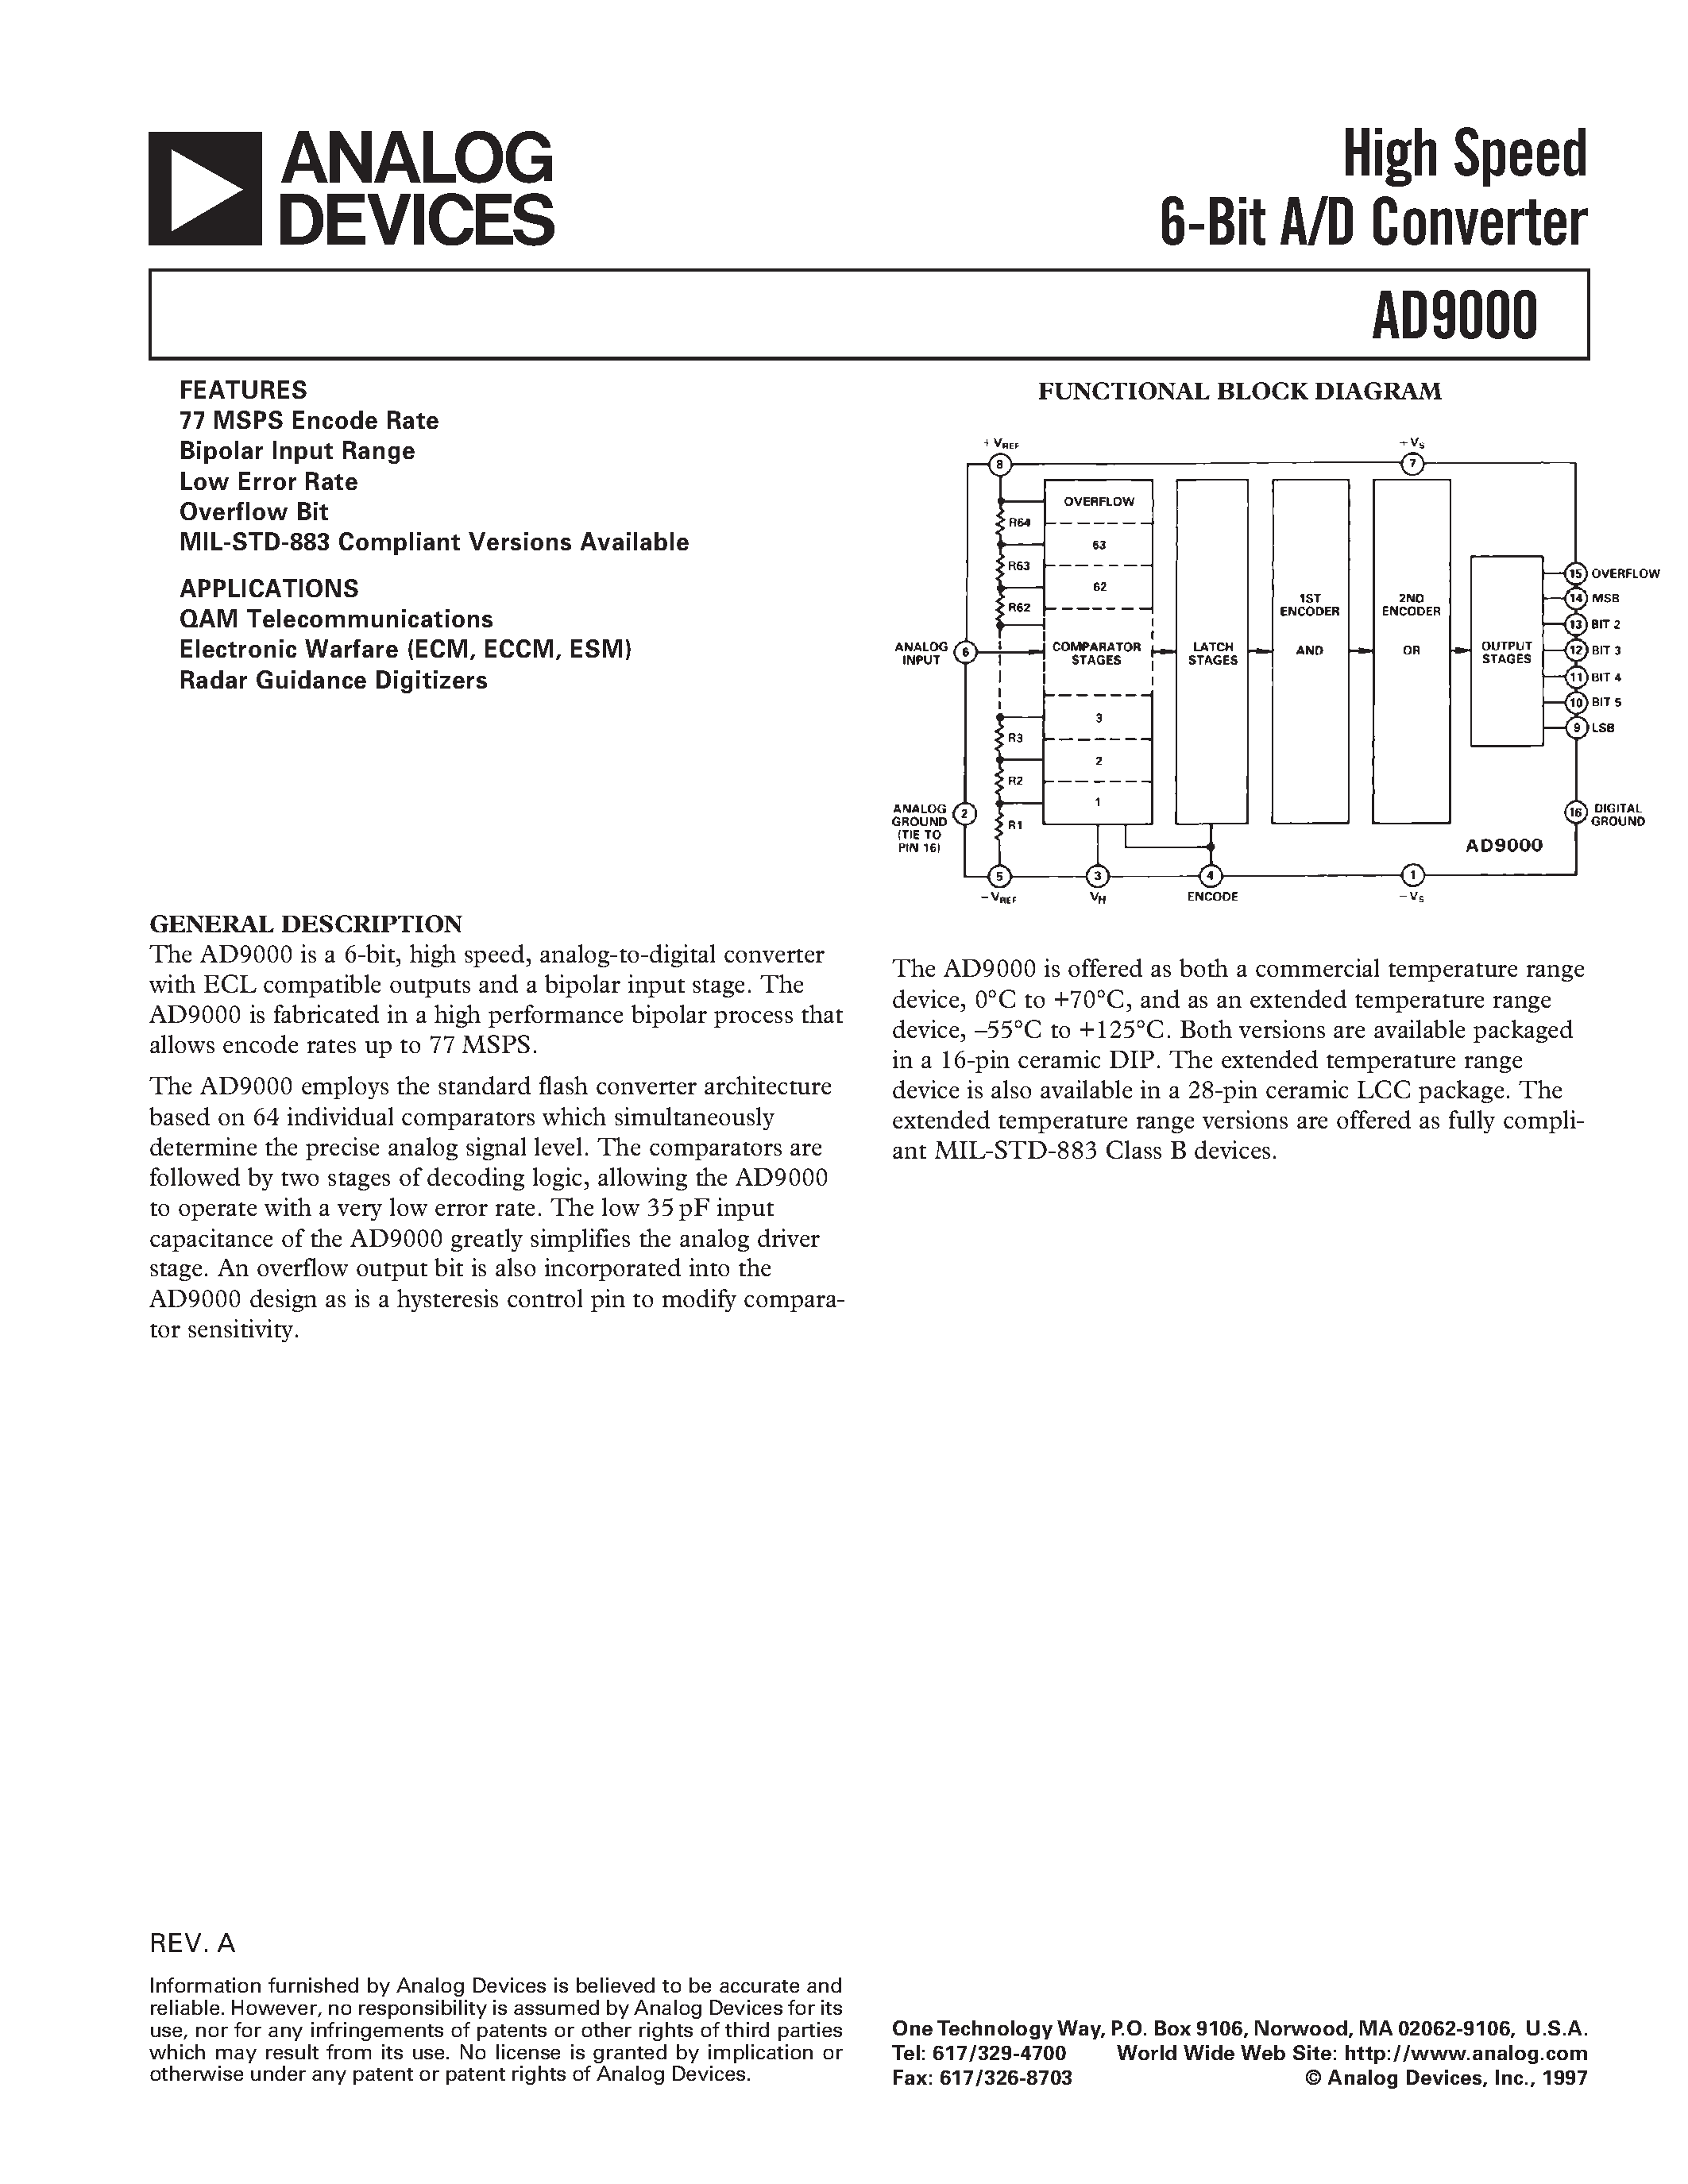 Даташит AD9000 - High Speed 6-Bit A/D Converter страница 1